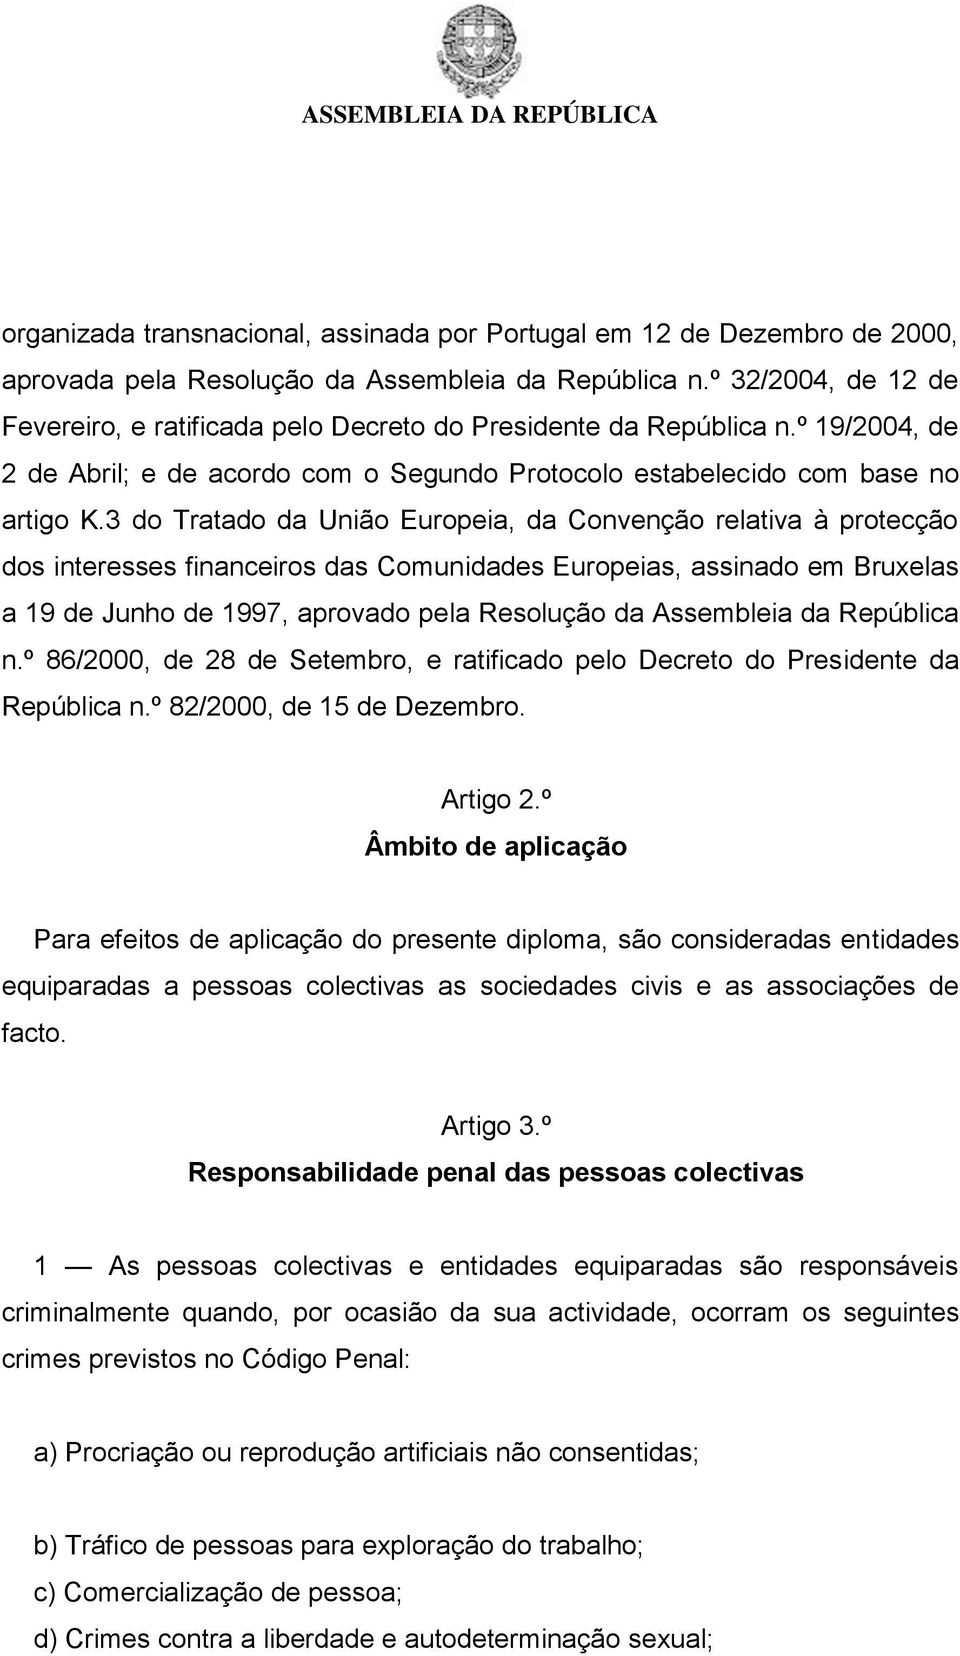 3 do Tratado da União Europeia, da Convenção relativa à protecção dos interesses financeiros das Comunidades Europeias, assinado em Bruxelas a 19 de Junho de 1997, aprovado pela Resolução da